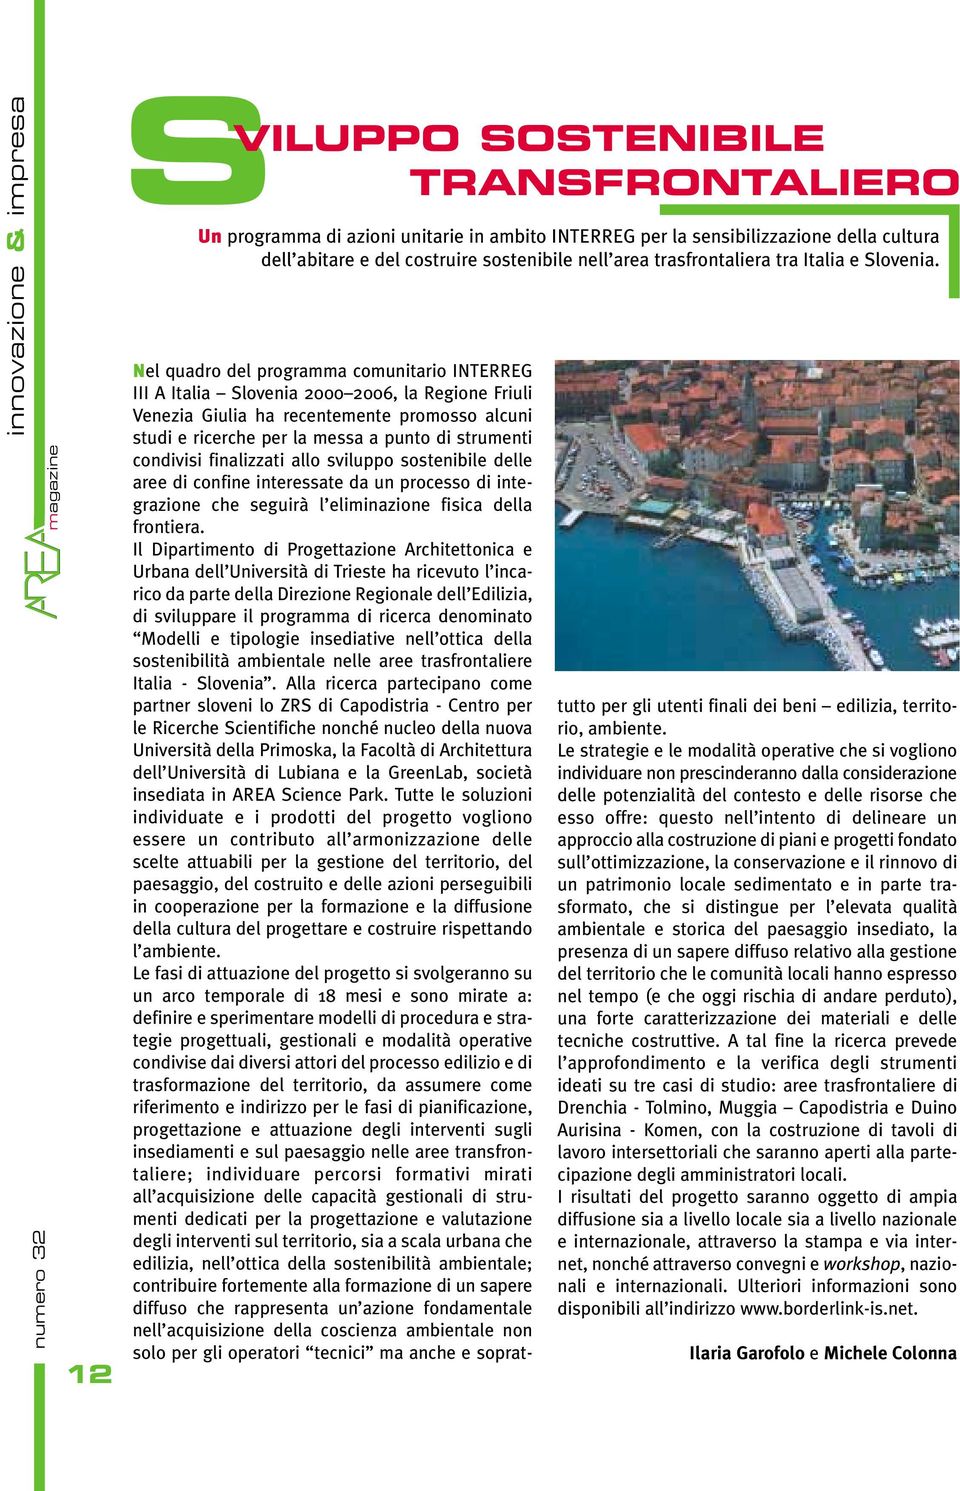 Nel quadro del programma comunitario INTERREG III A Italia Slovenia 2000 2006, la Regione Friuli Venezia Giulia ha recentemente promosso alcuni studi e ricerche per la messa a punto di strumenti